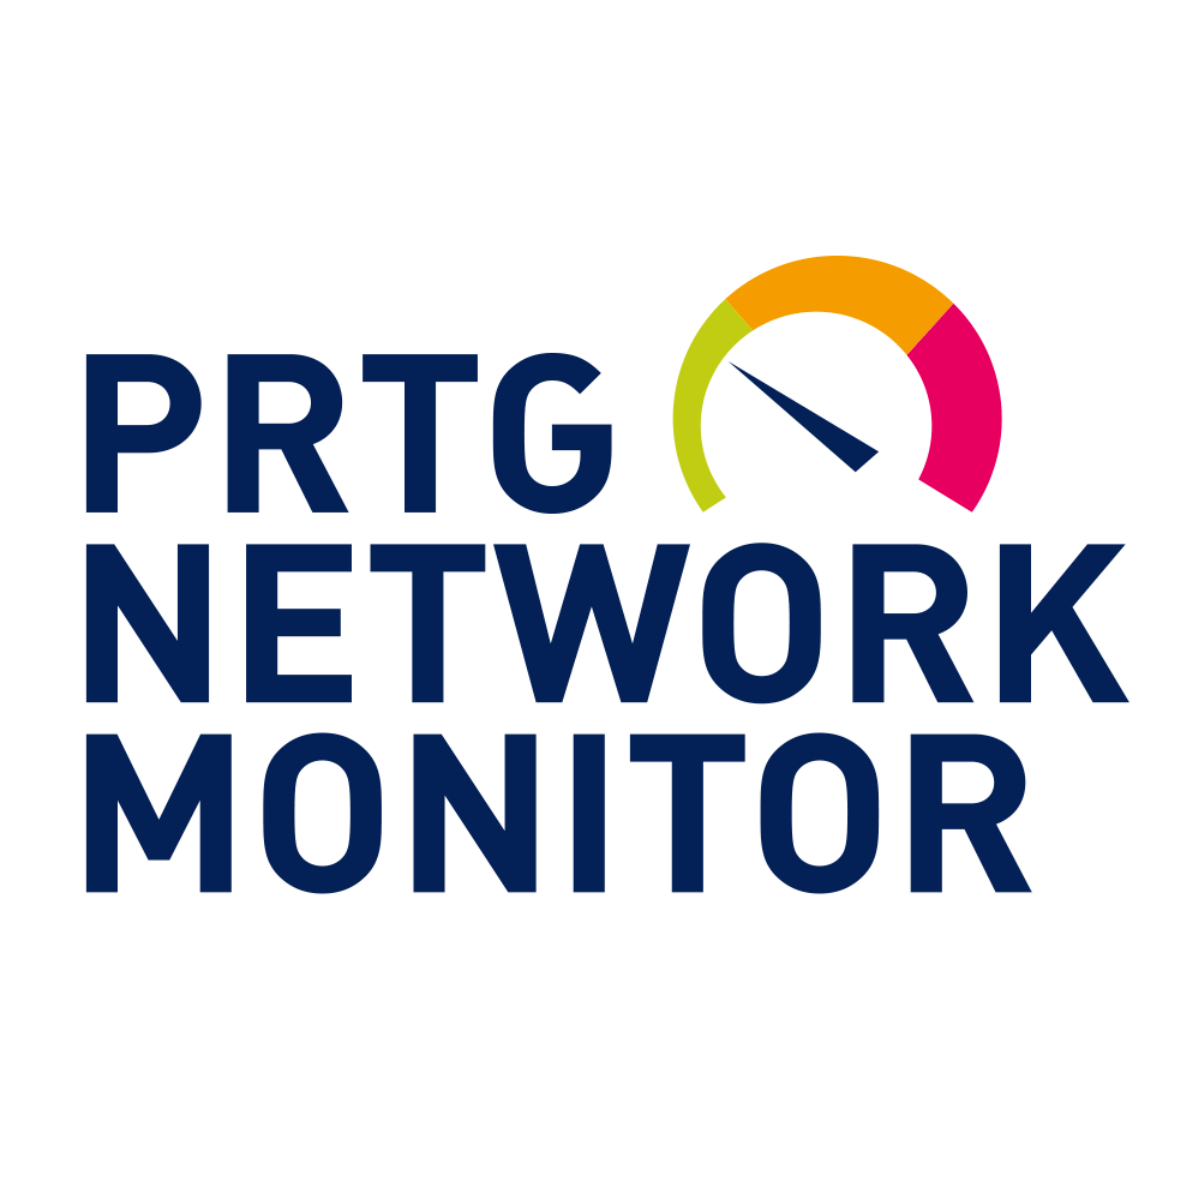 prtg network monitor full crack